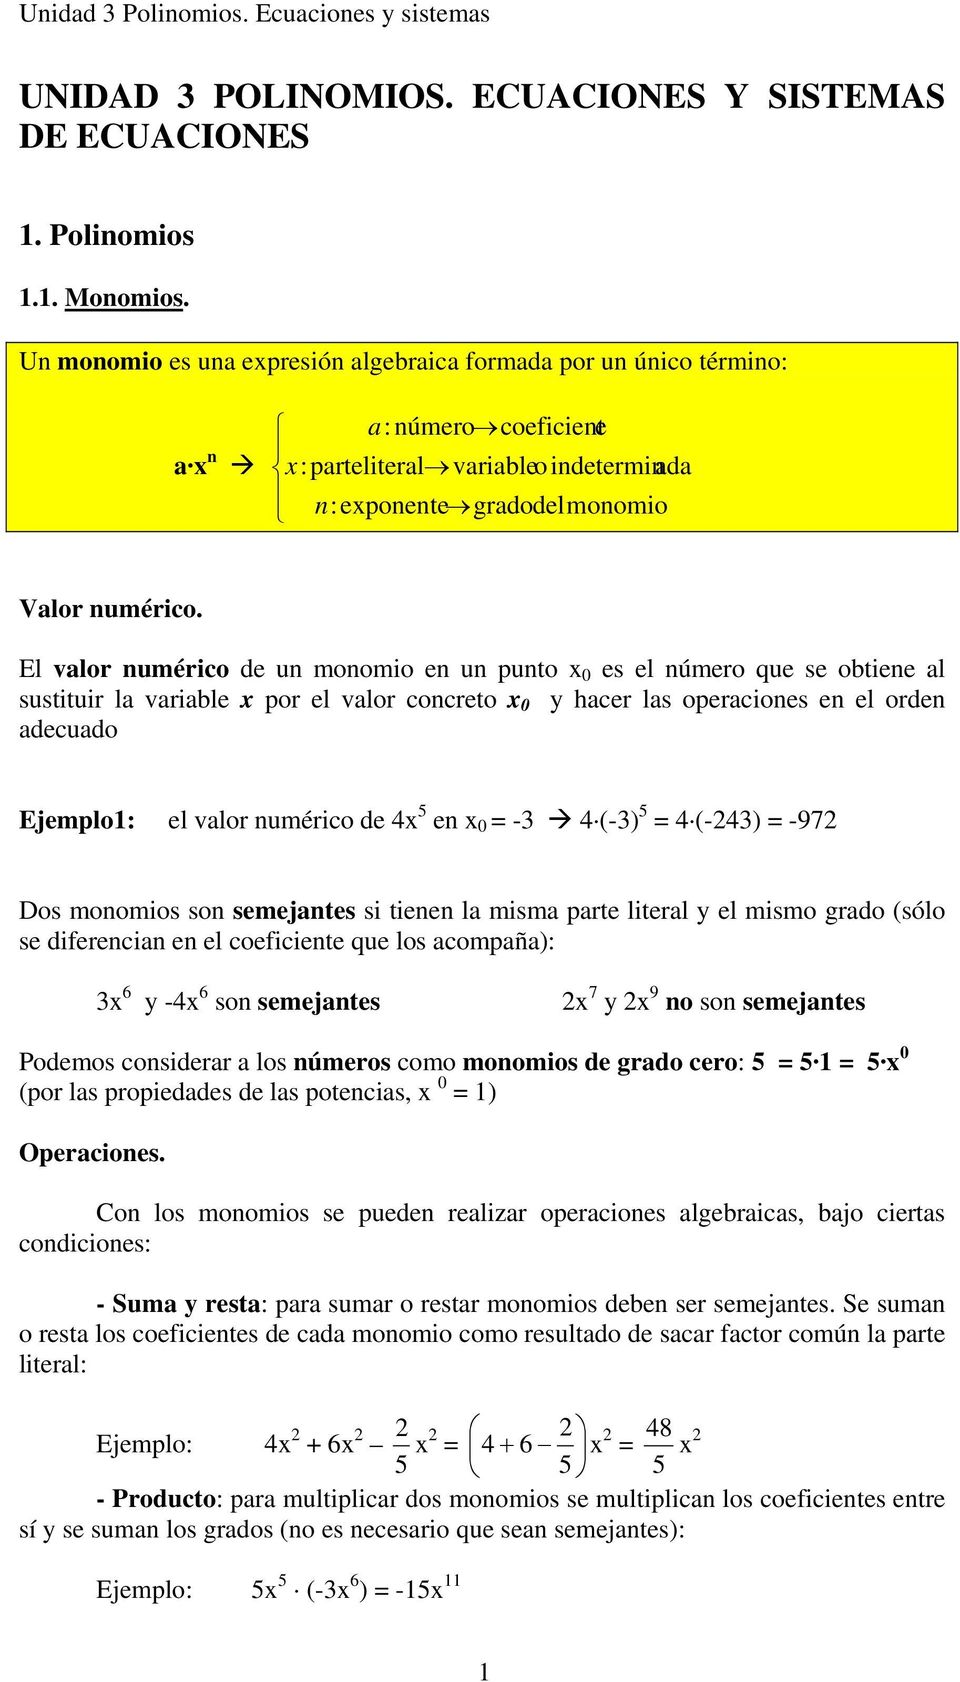 El valor numérico de un monomio en un punto 0 es el número que se obtiene al sustituir la variable por el valor concreto 0 hacer las operaciones en el orden adecuado Ejemplo: el valor numérico de 5